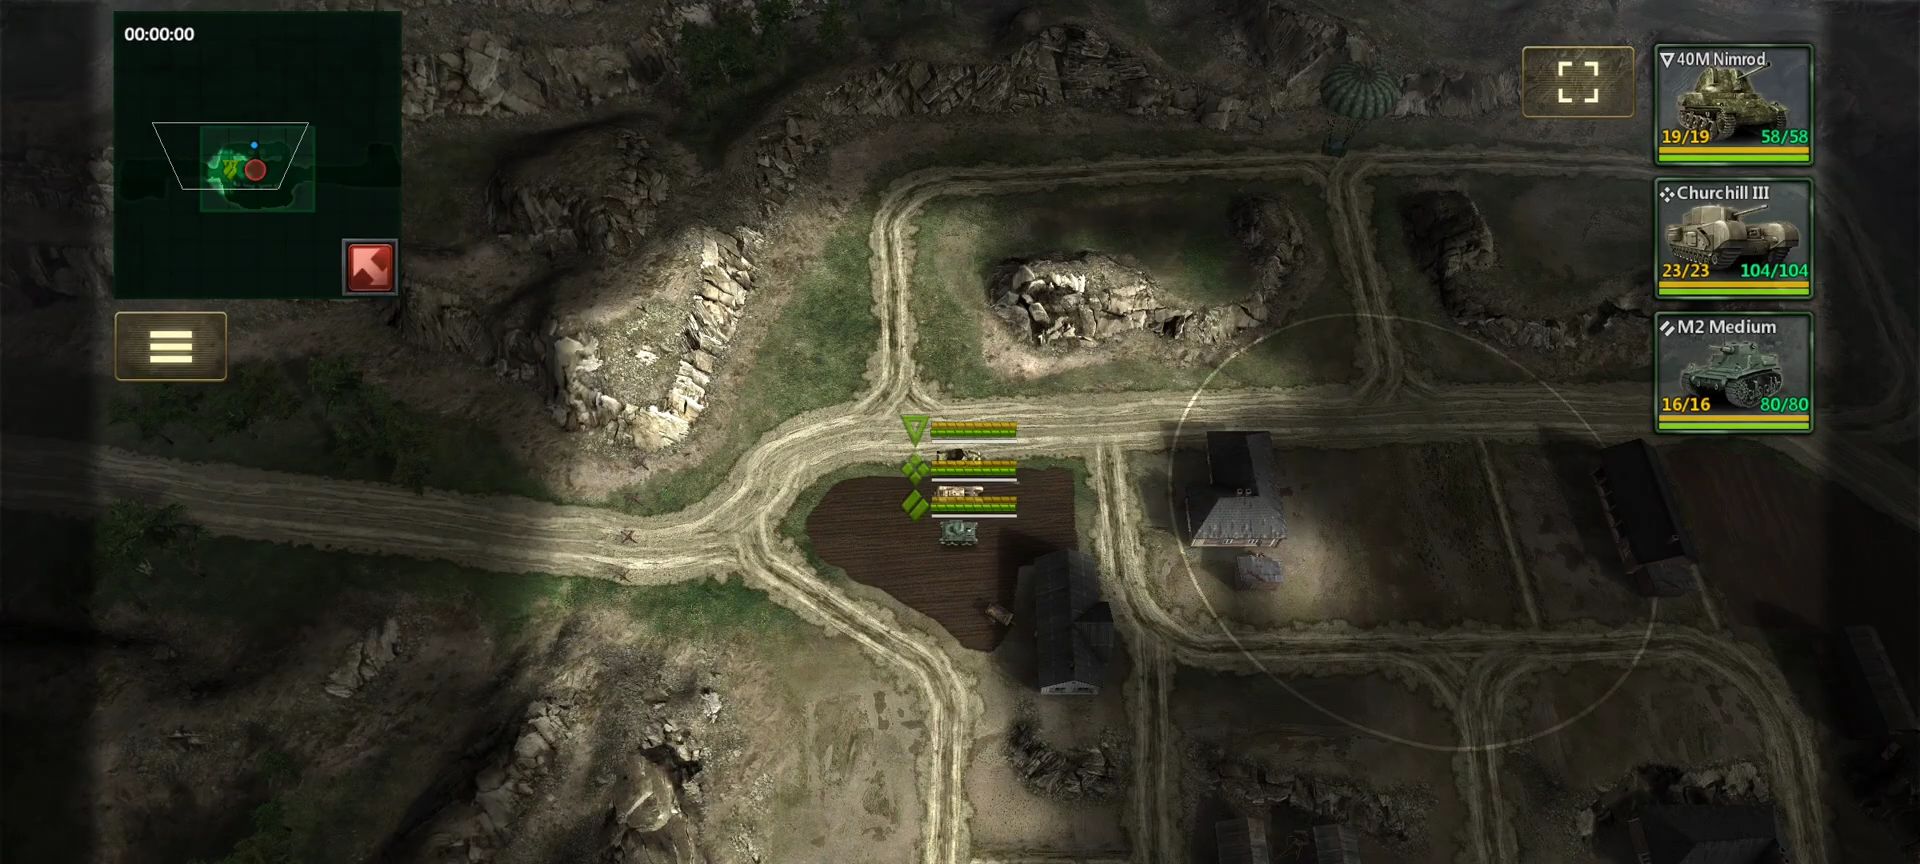 Скачать Tanks Charge: Online PvP Arena: Android Танковые игры игра на телефон и планшет.